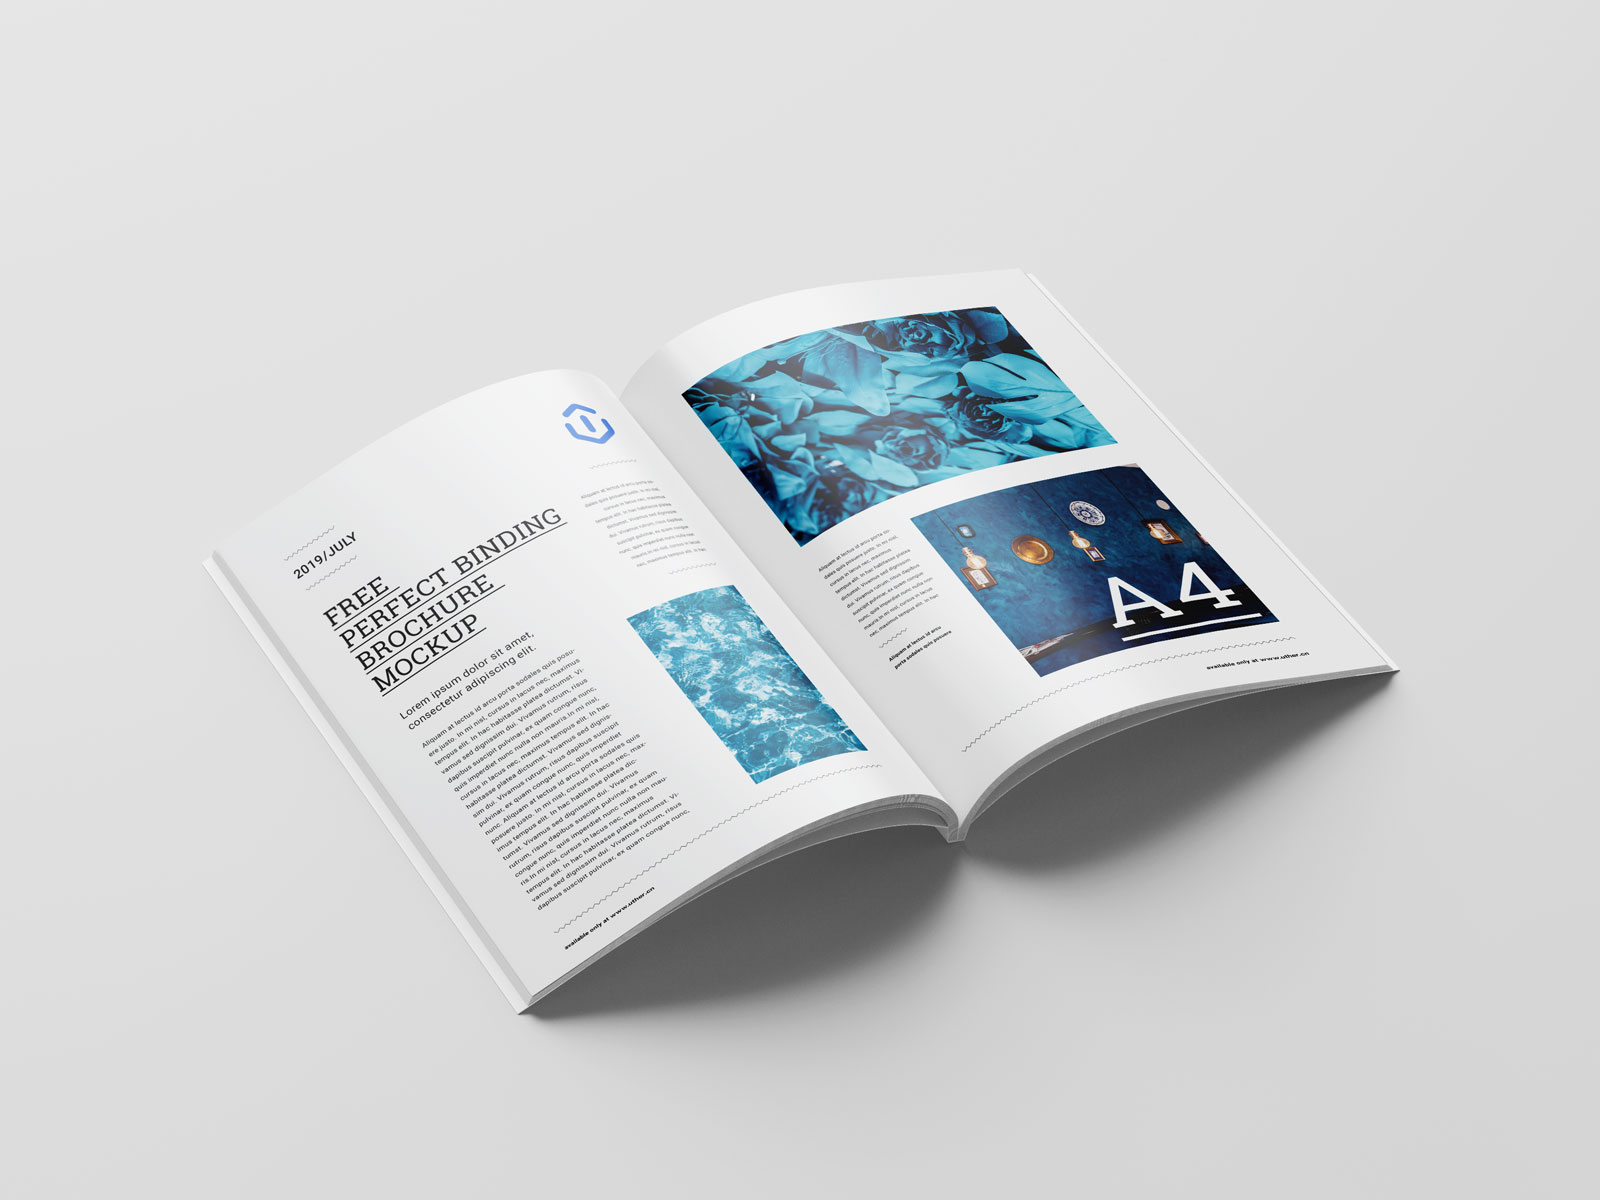 高端A4胶装宣传册画册手册设计内页展示PSD样机素材brochure mockup